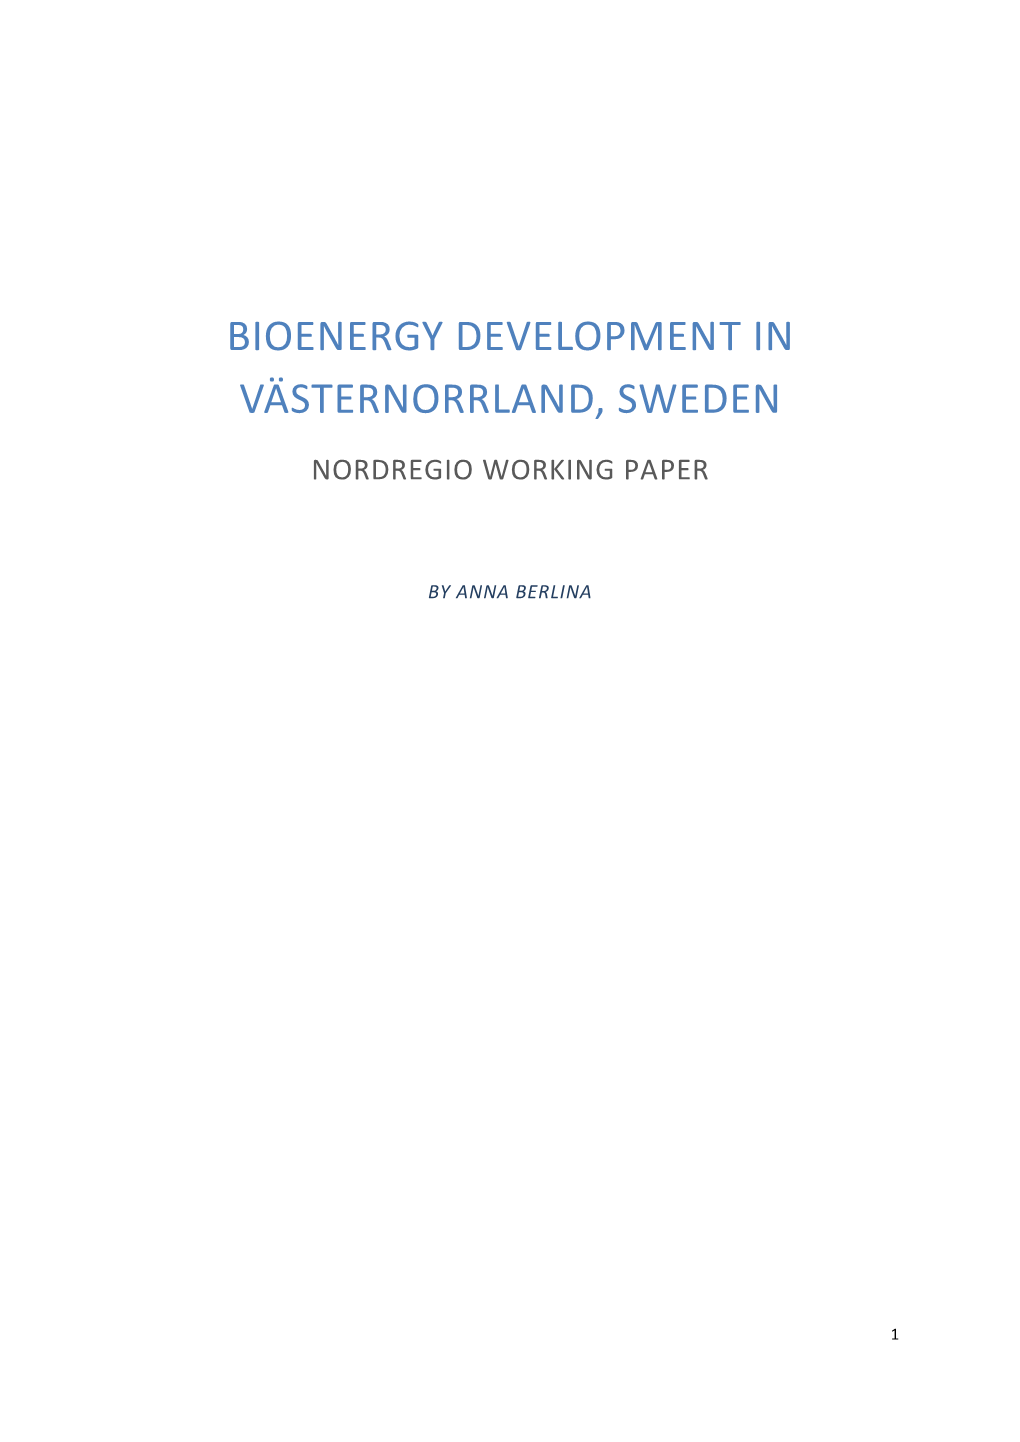 Bioenergy Development in Västernorrland, Sweden